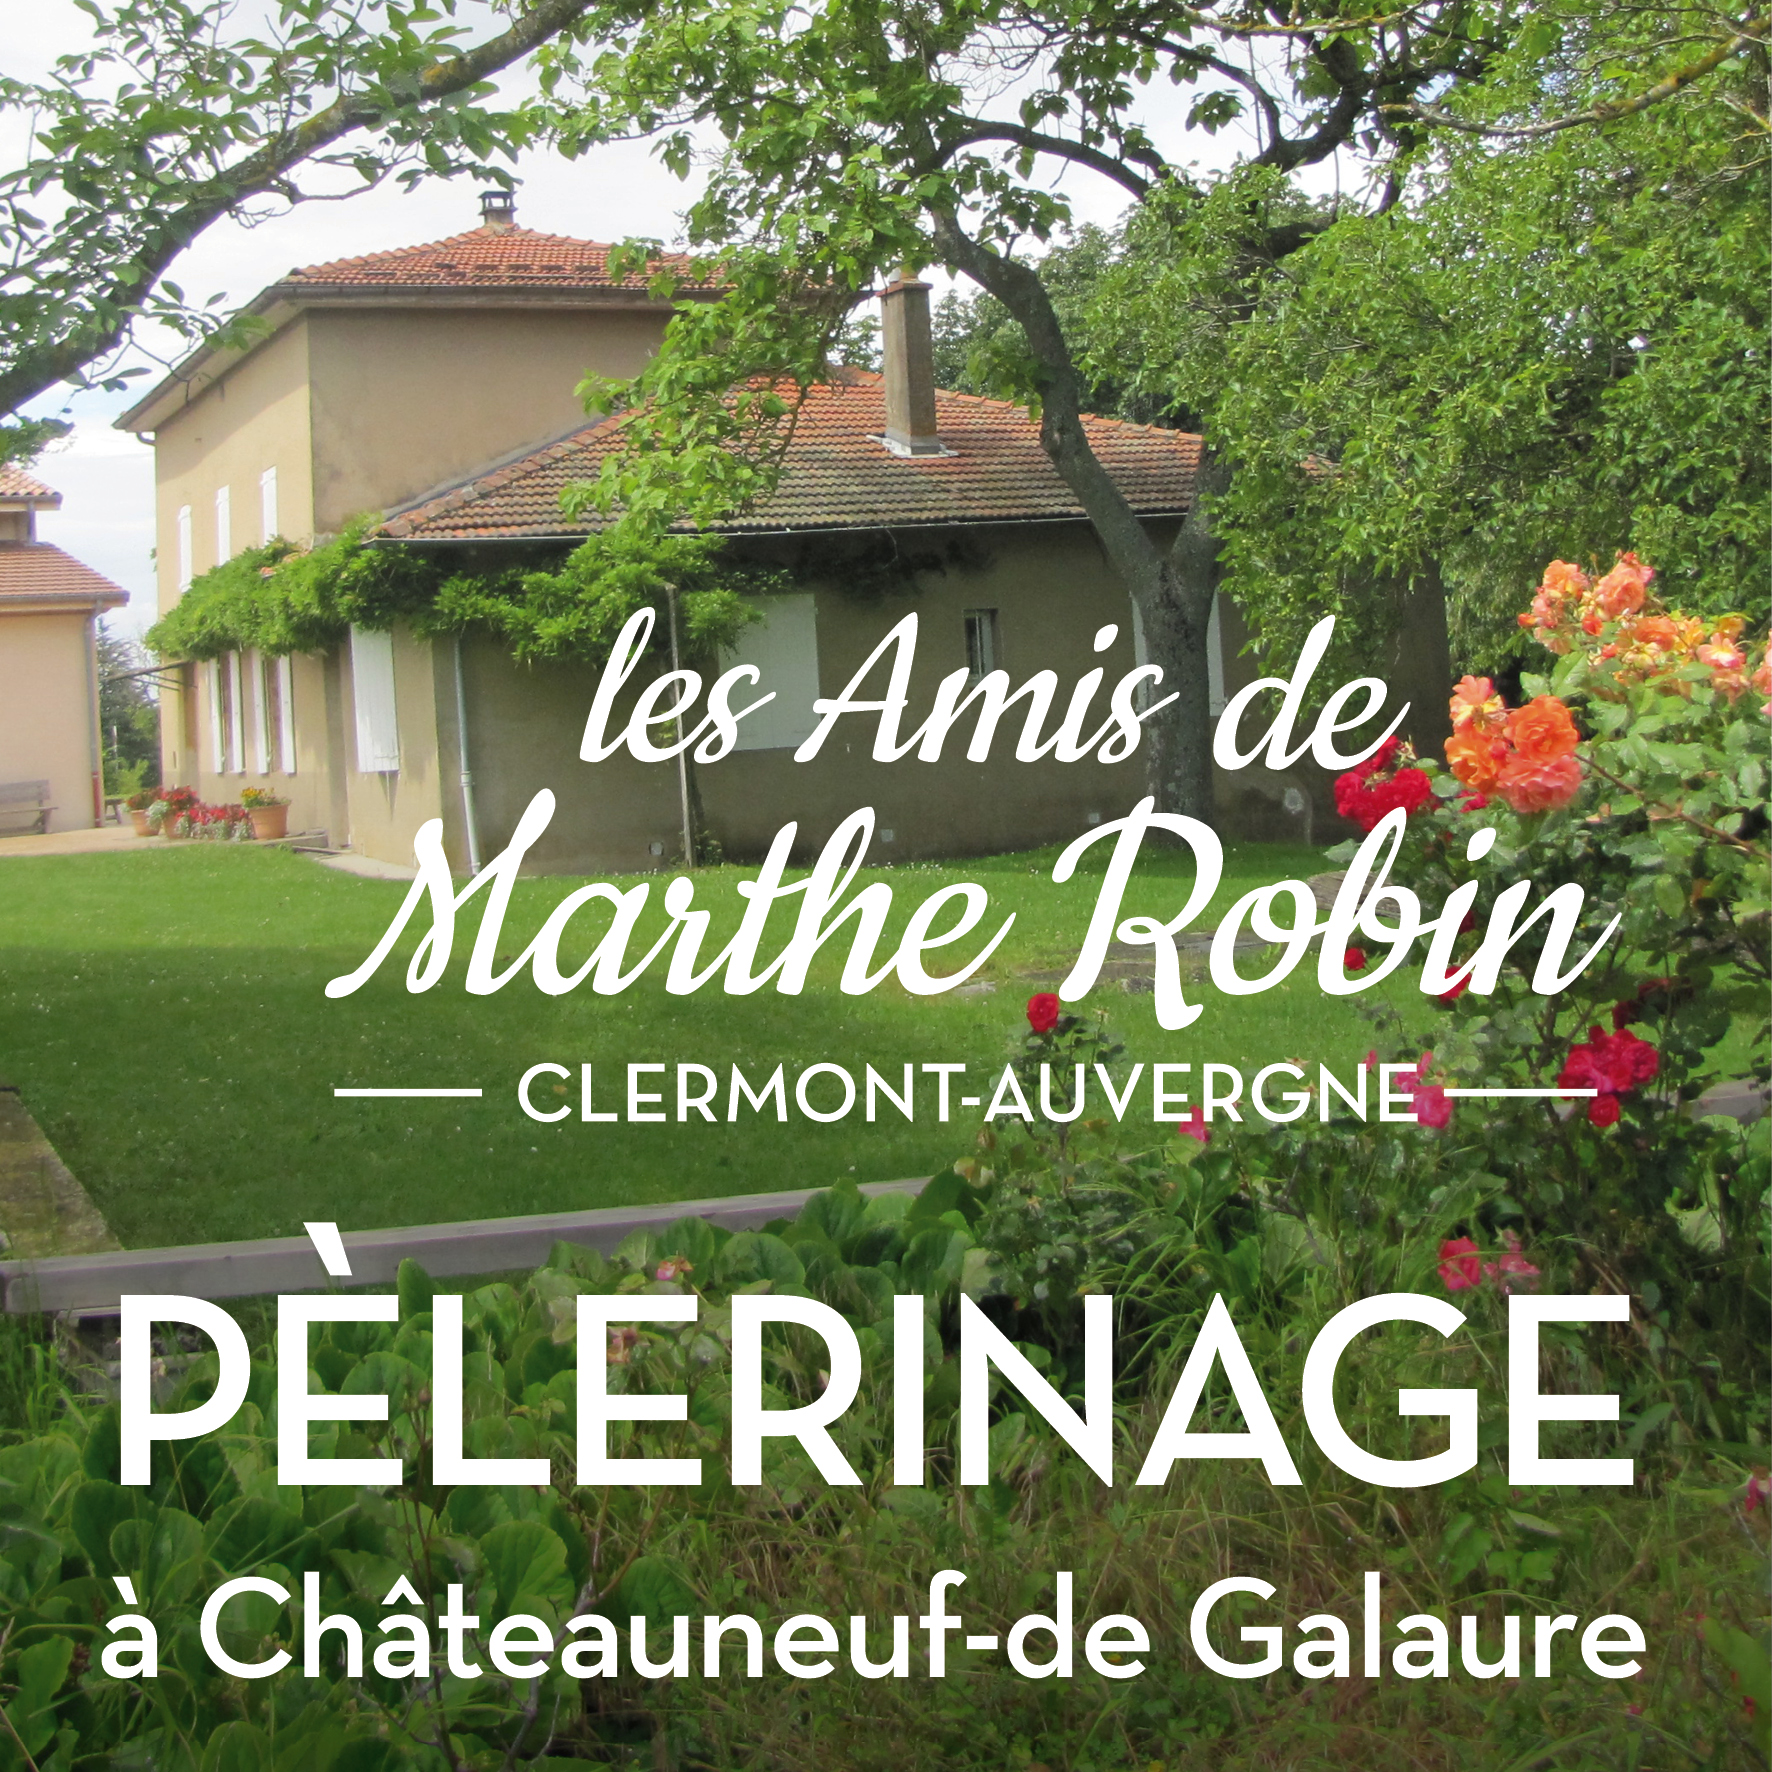 Pèlerinage à Châteauneuf-de-Galaure le lundi 6 février 2023 avec les amis de Marthe Robin en Auvergne